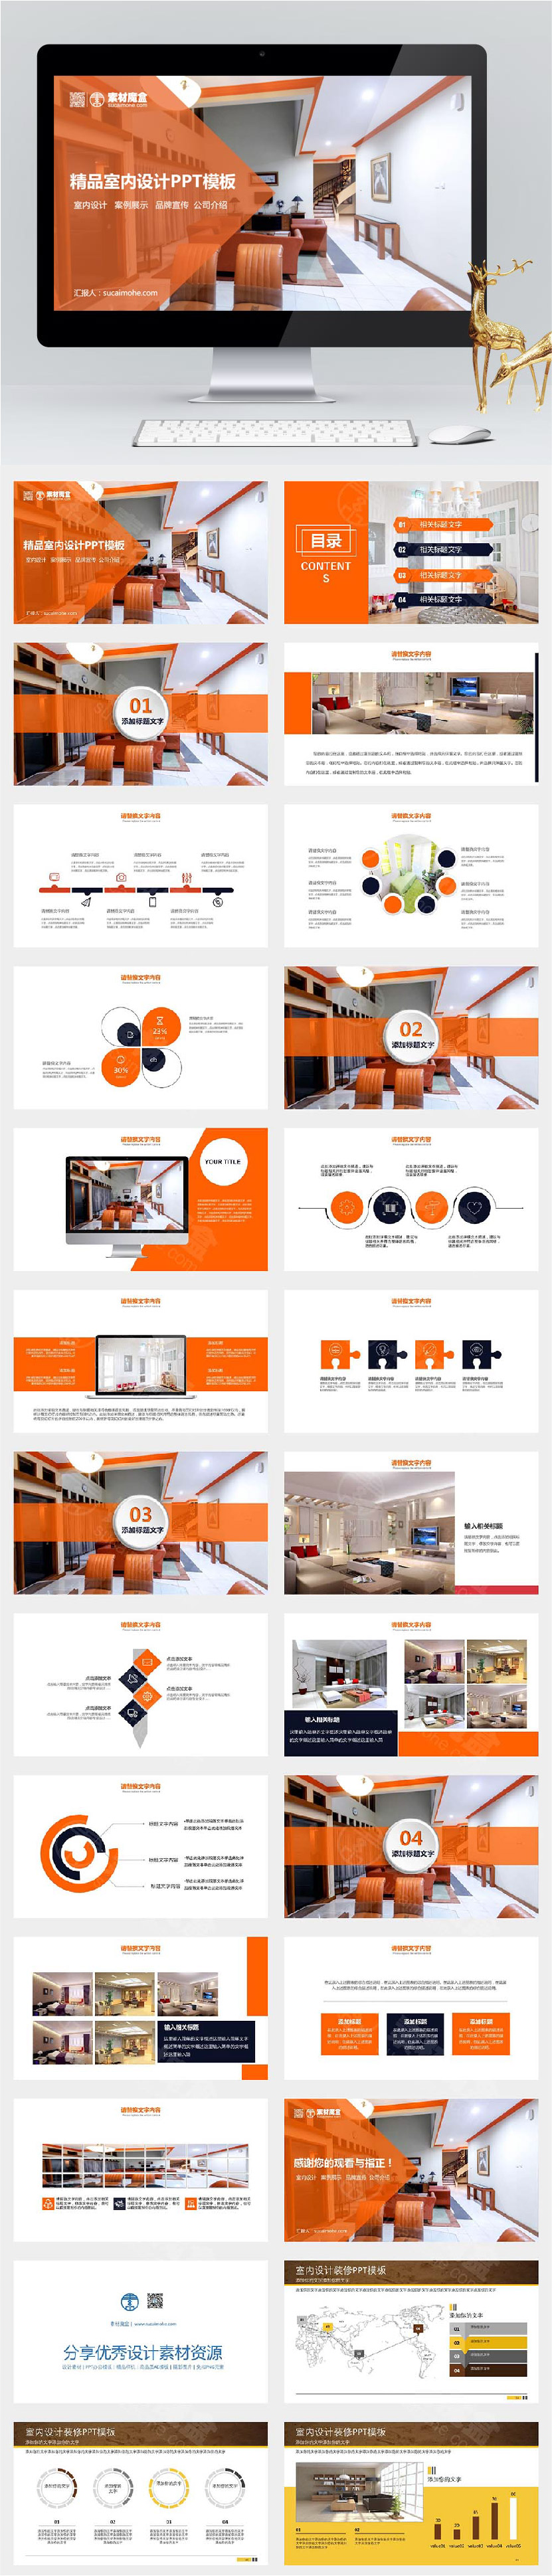 欧式橙色精品室内设计方案汇报PPT模板